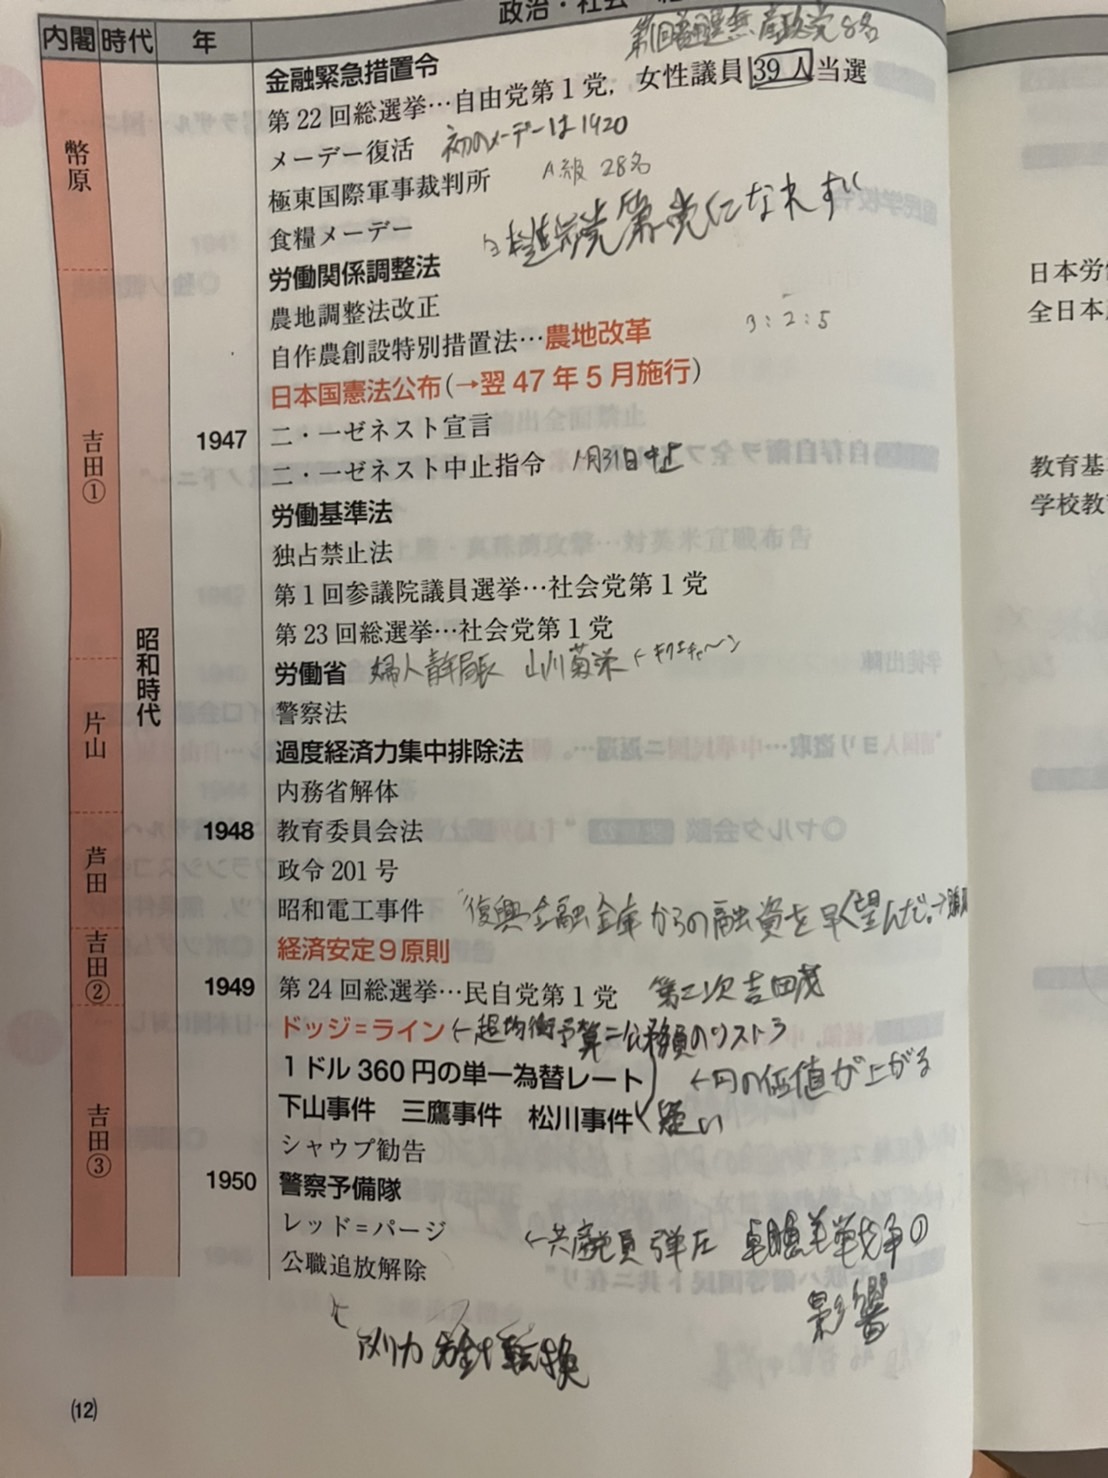 日本史の勉強を始めて10ヶ月で明治大学に合格した自分がおすすめの日本史の参考書と勉強法